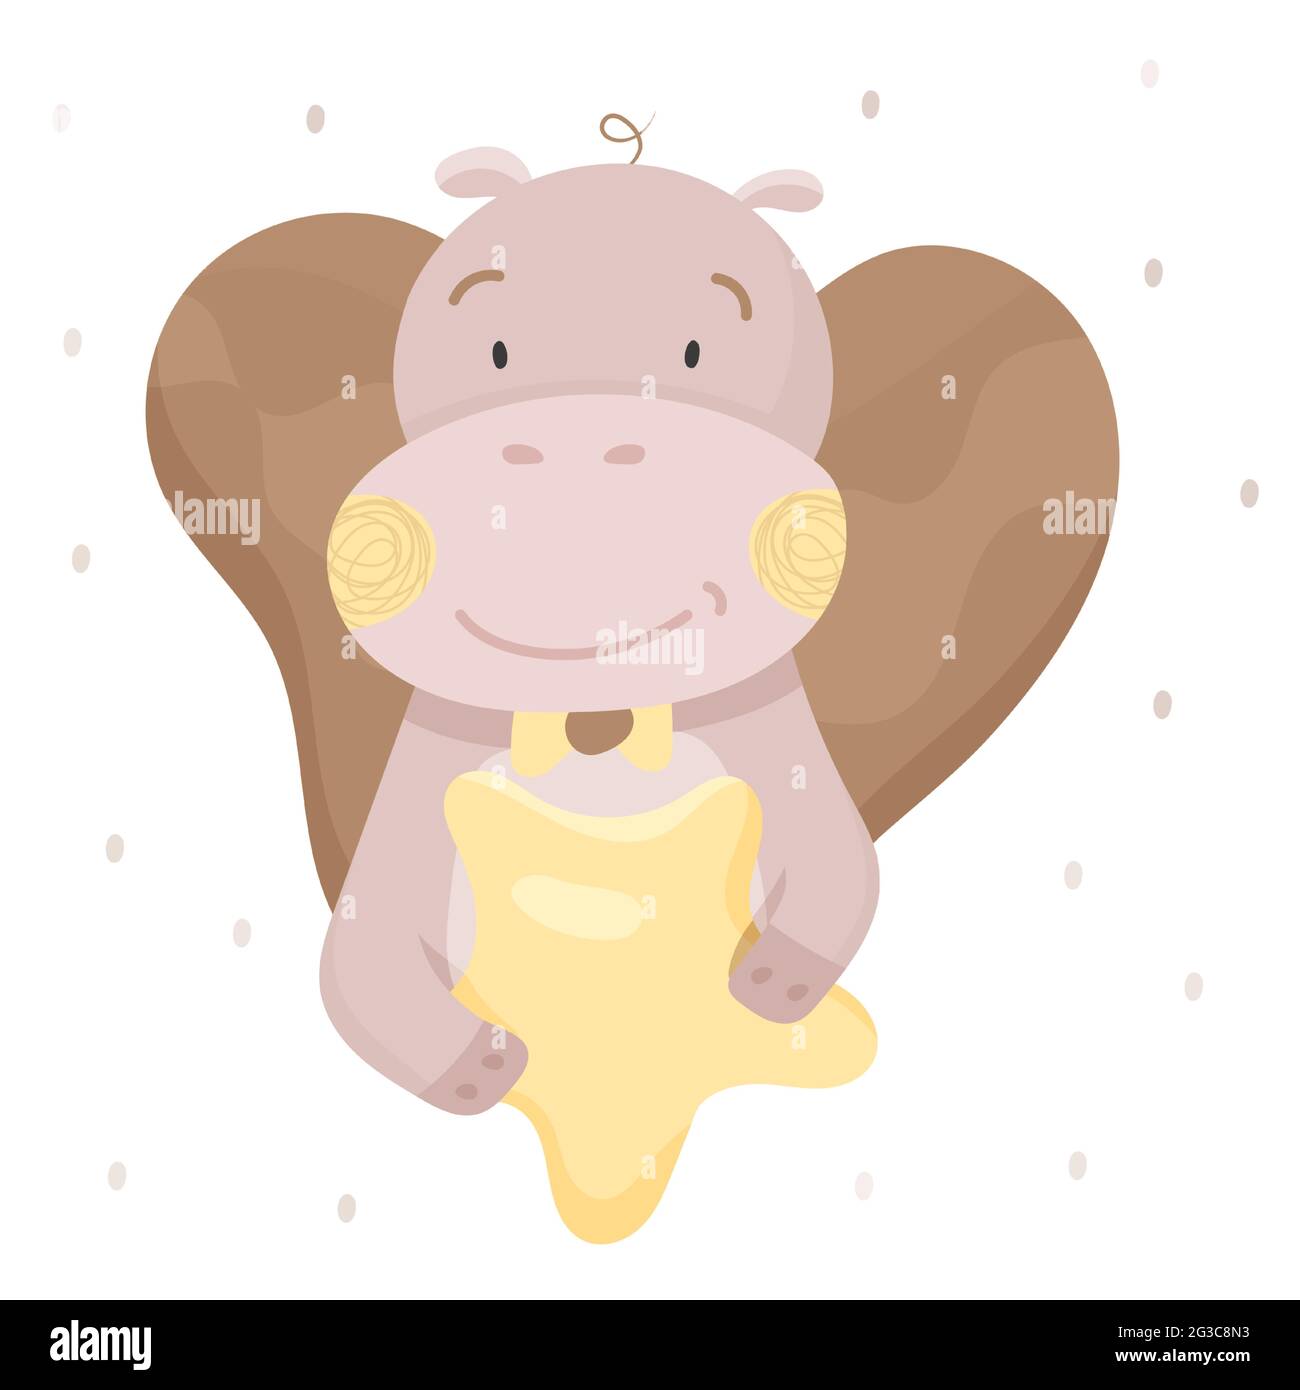 Das süße Nilpferd hält einen Stern. Baby Tier Konzept Illustration für Kinderzimmer, Charakter für Kinder. Ideal zum Dekorieren von Kinderzimmer und Drucken auf Baby Stock Vektor